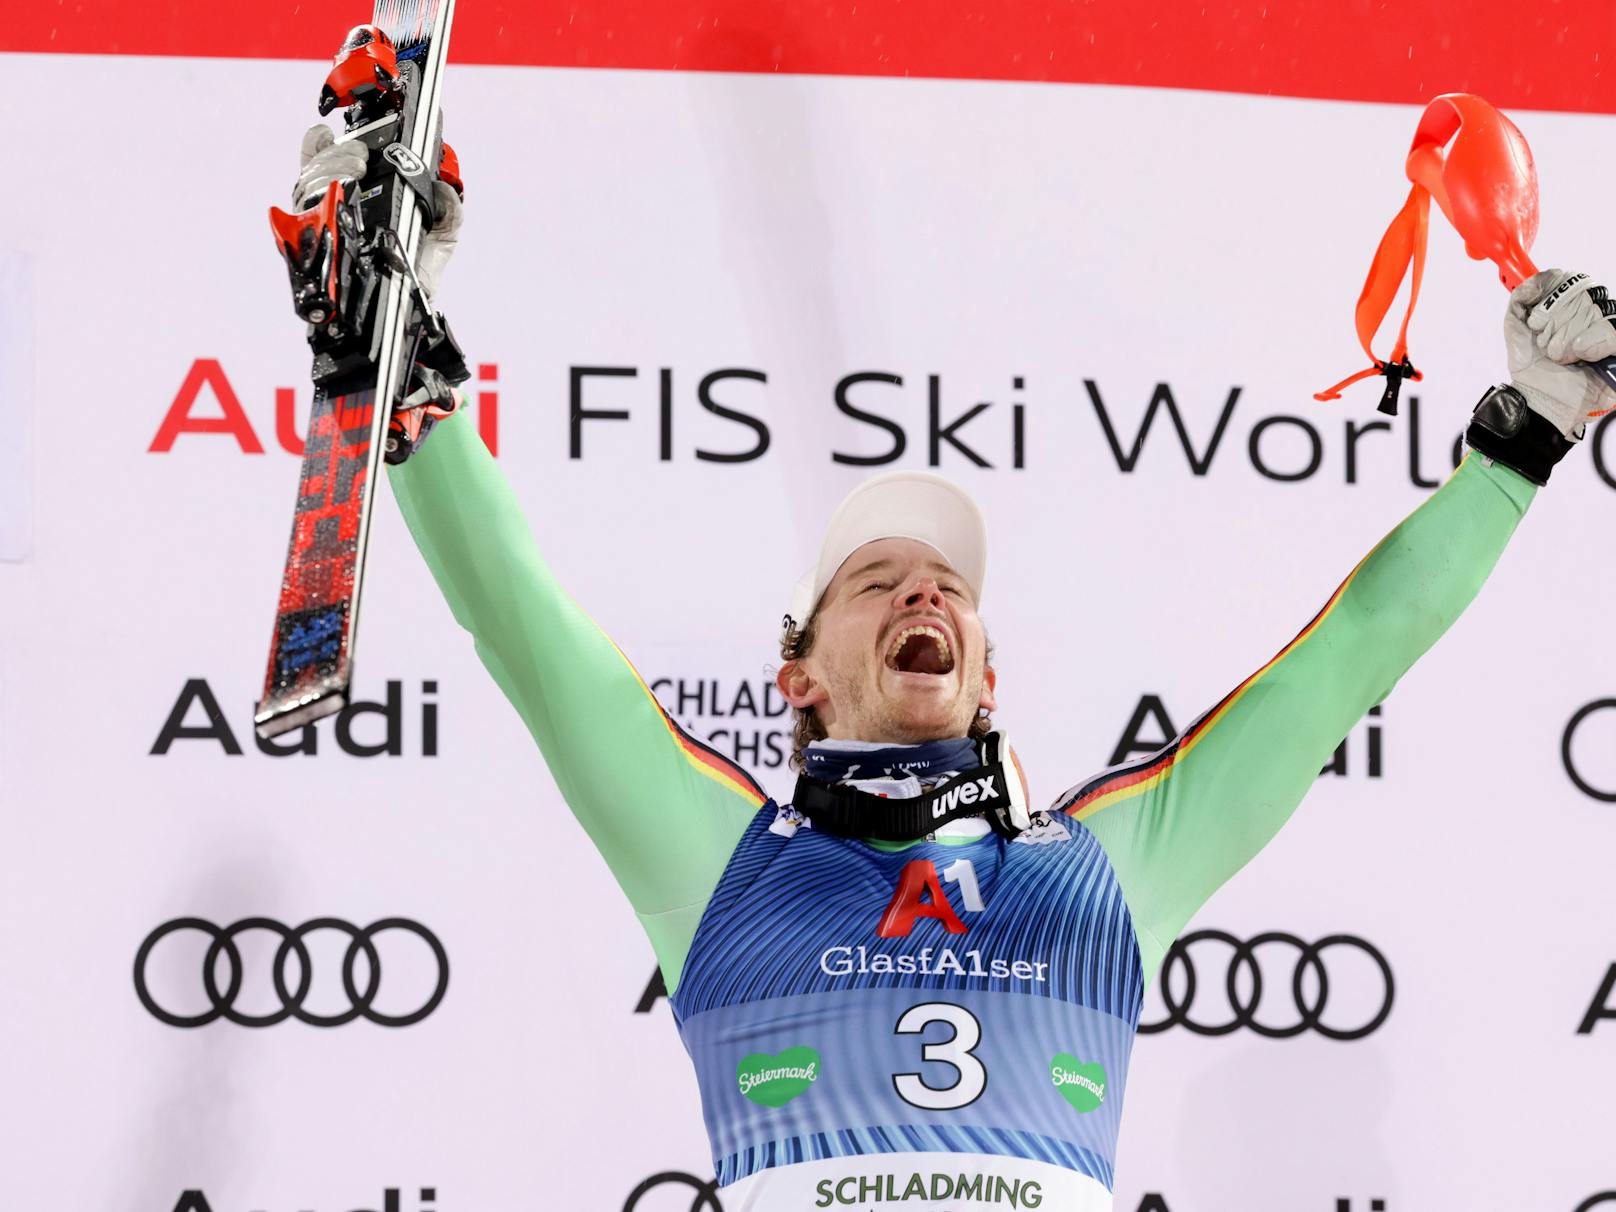 Es war das Österreich-Doppel für Linus Strasser. Der Deutsche gewann nach dem Slalom in Kitzbühel auch in Schladming, krönte sich zum Nightrace-Sieger. ÖSV-Star Manuel Feller kam beim zweiten Heimrennen nicht über Platz fünf hinaus.